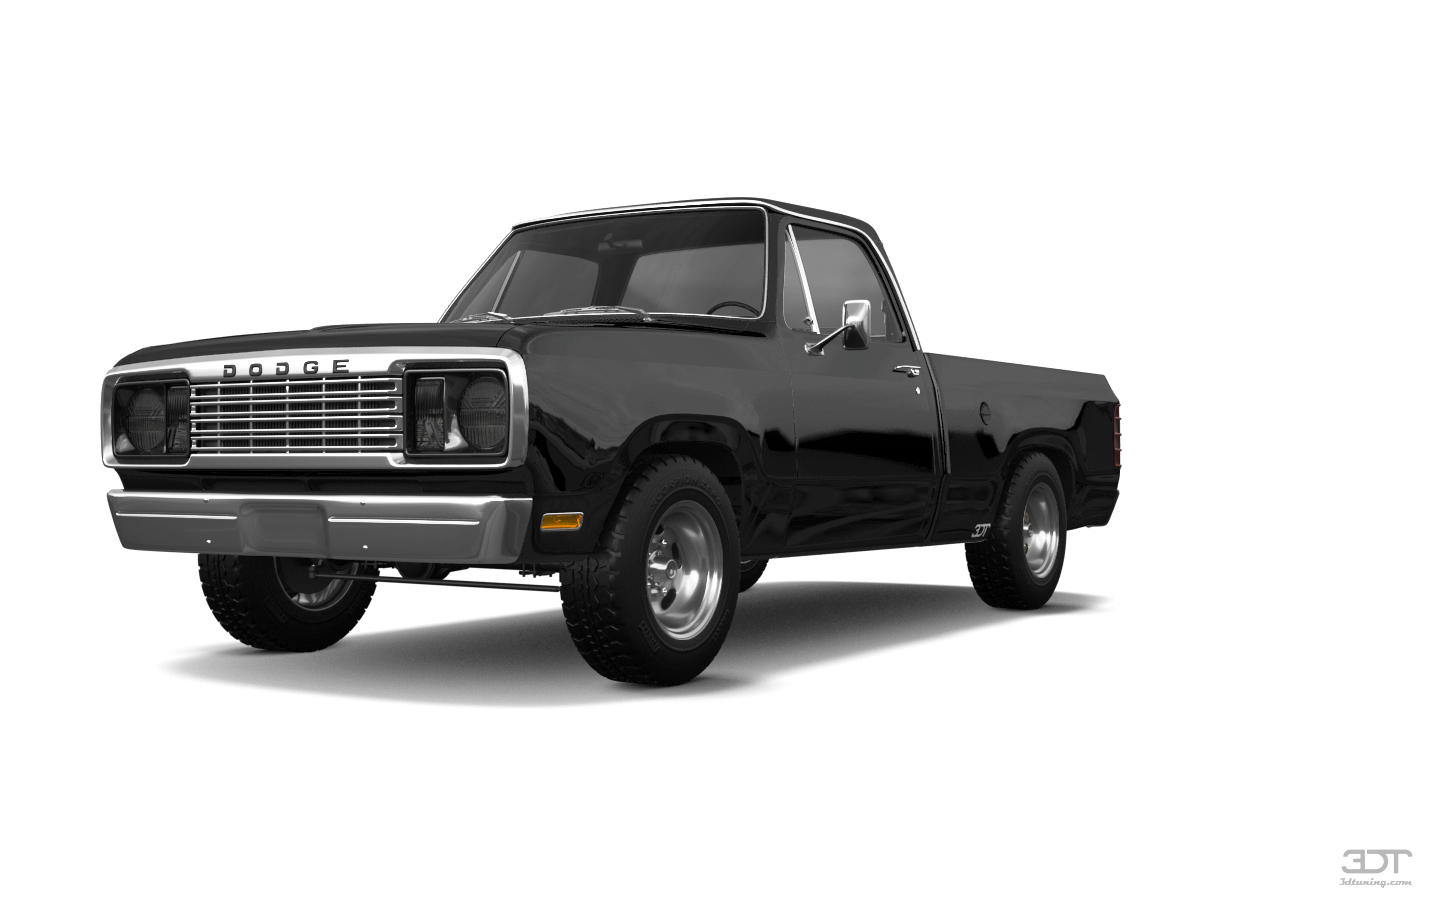 Dodge Power Wagon W200 2 Door pickup truck 1977